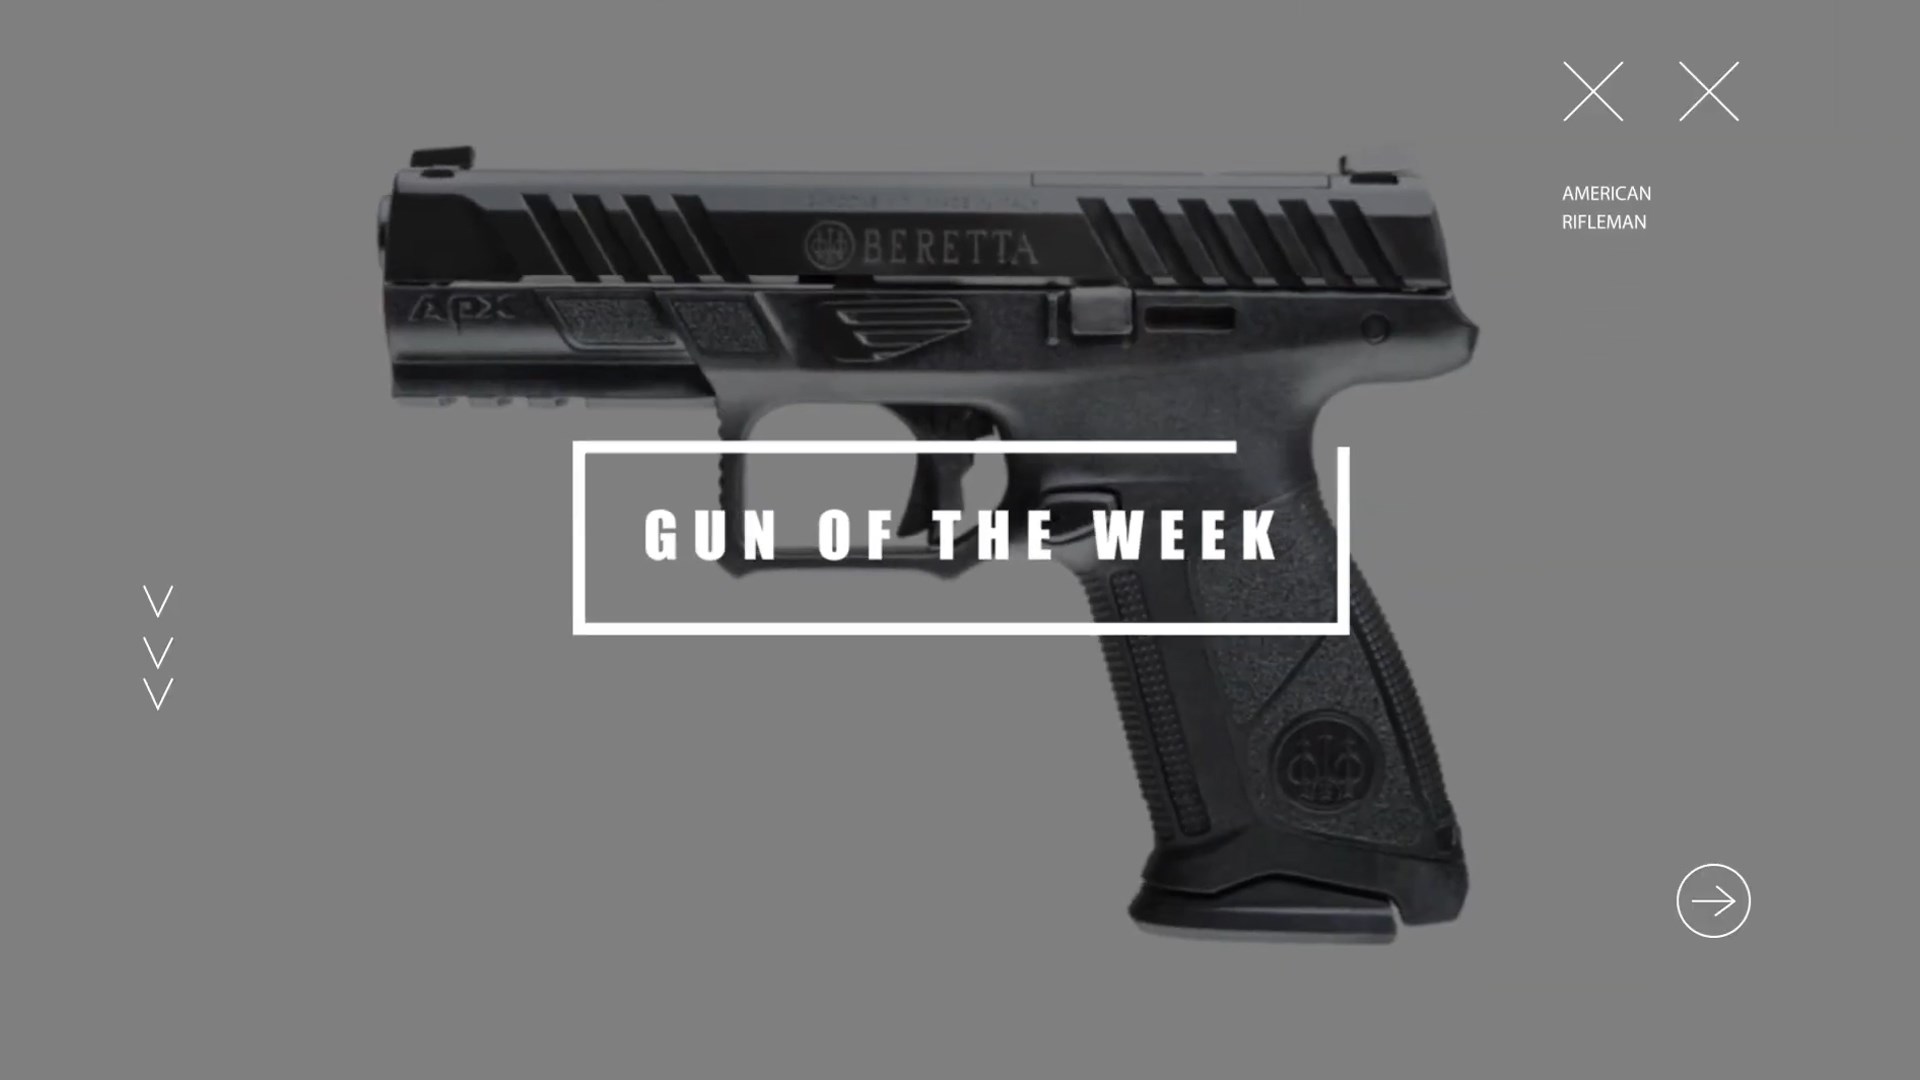 GUN OF THE WEEK text box overlay black beretta apx a1 compact 9 mm handgun AMERICAN RIFLEMAN text arrows X